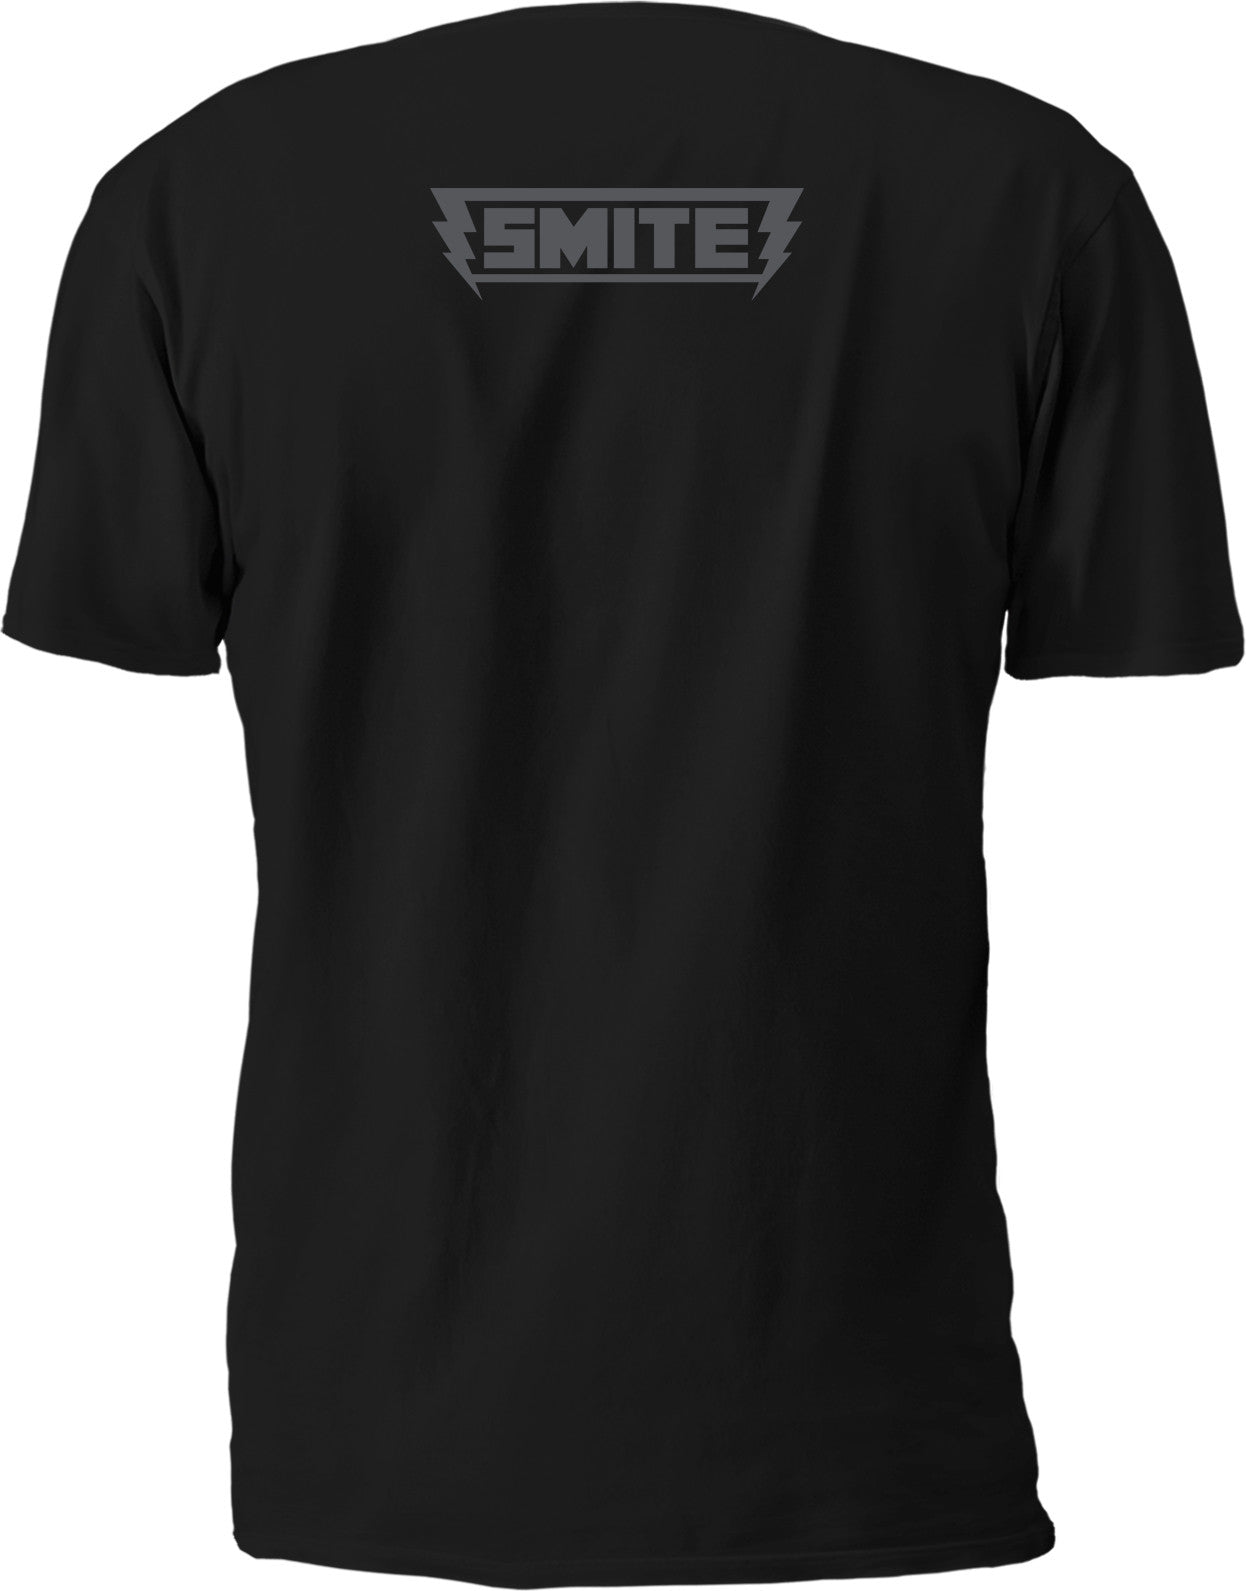 Smite Mayan Pantheon T-shirt